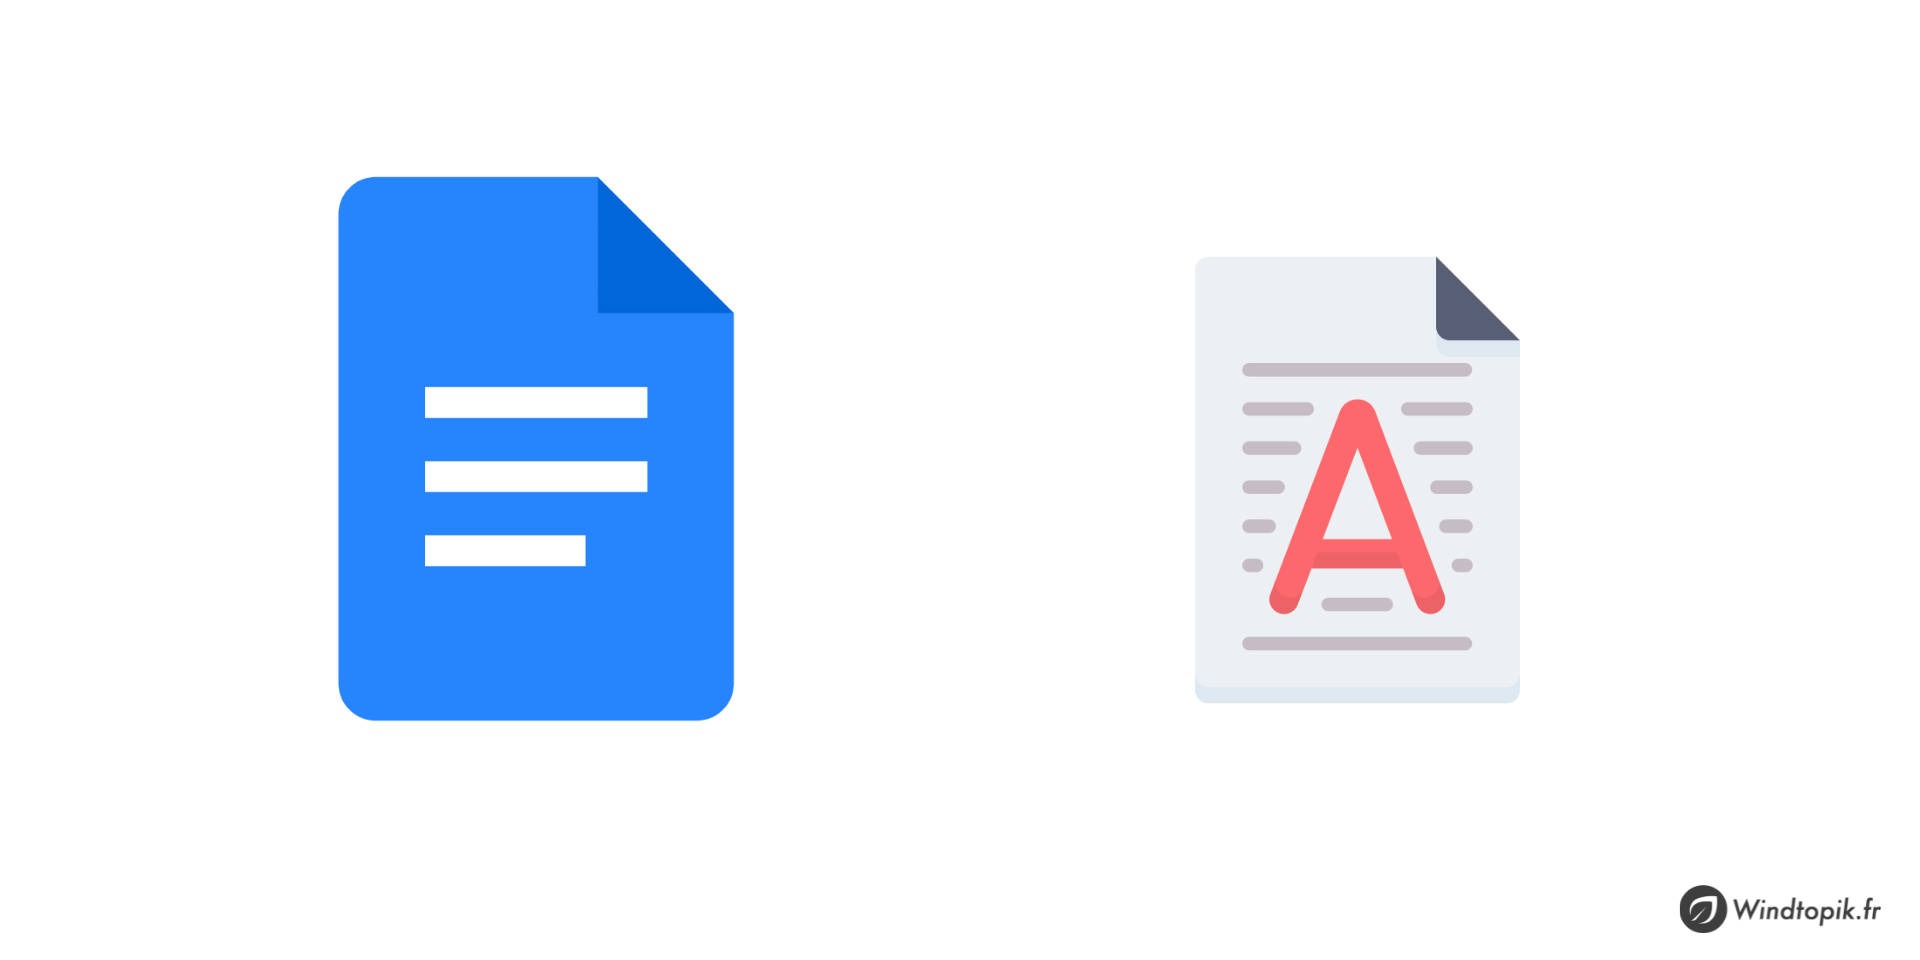 Google Docs : Comment utiliser la fonctionnalité de filigrane ?